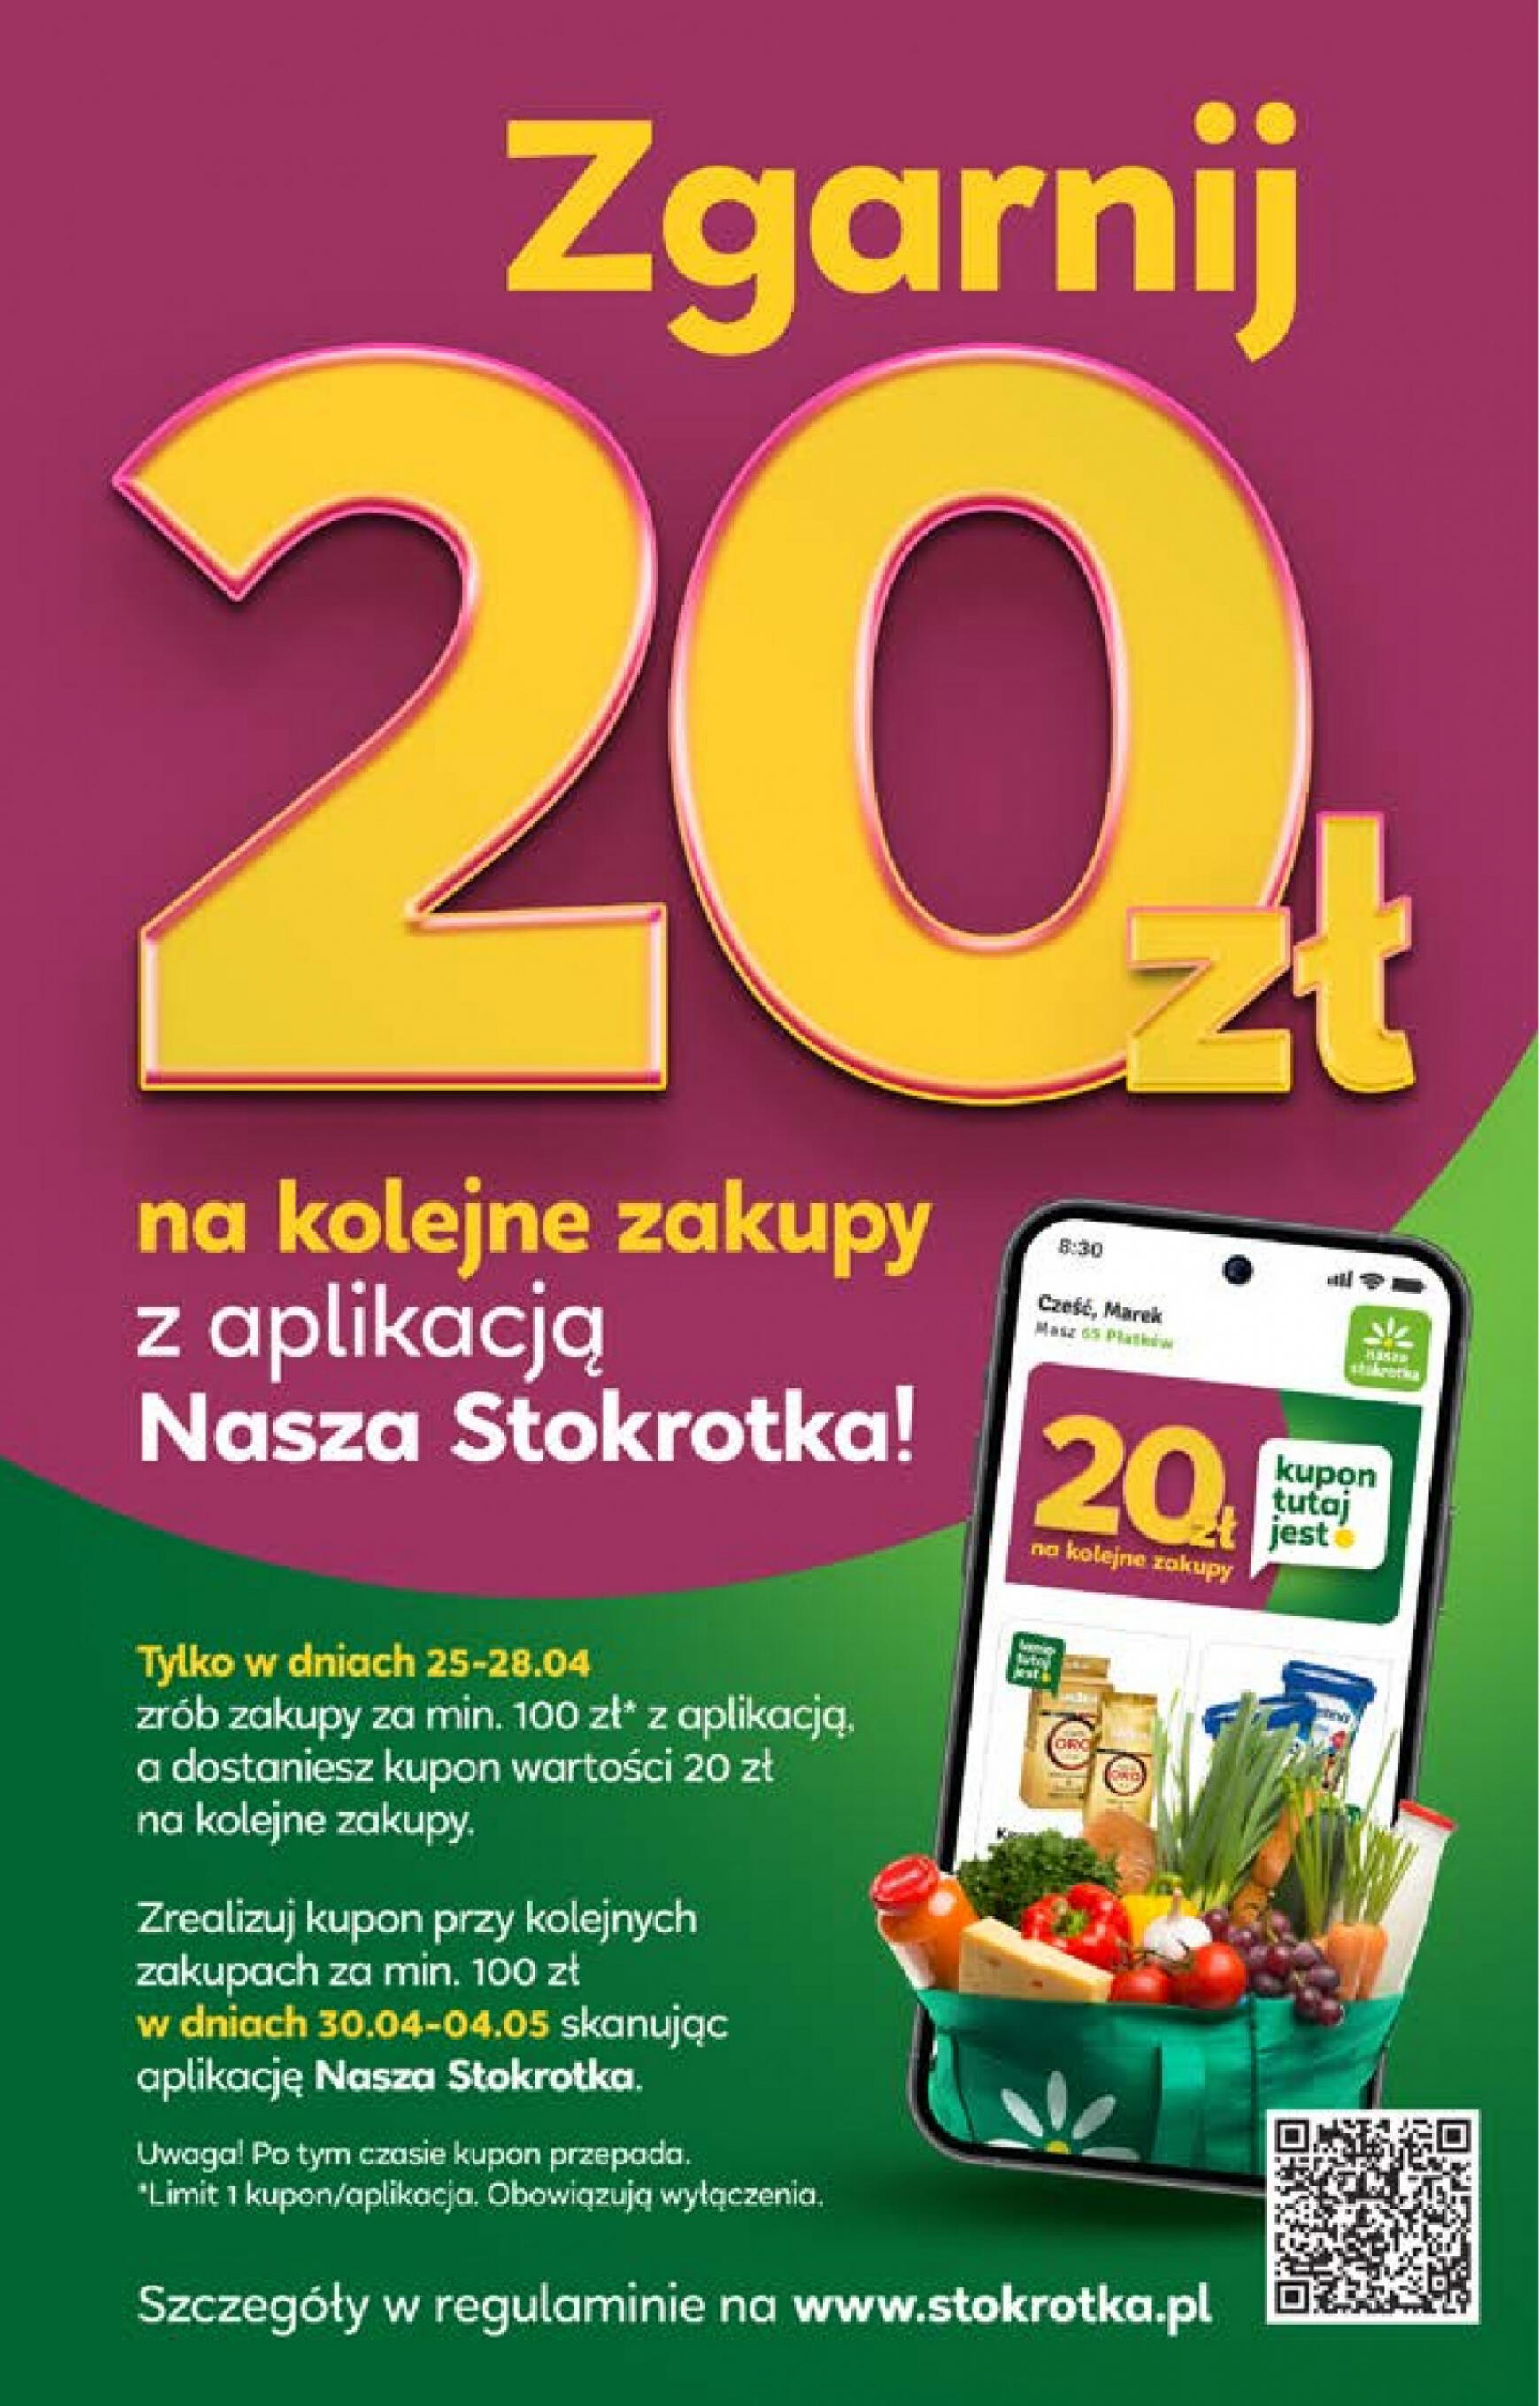 stokrotka - Stokrotka Market gazetka aktualna ważna od 25.04. - 29.04. - page: 14